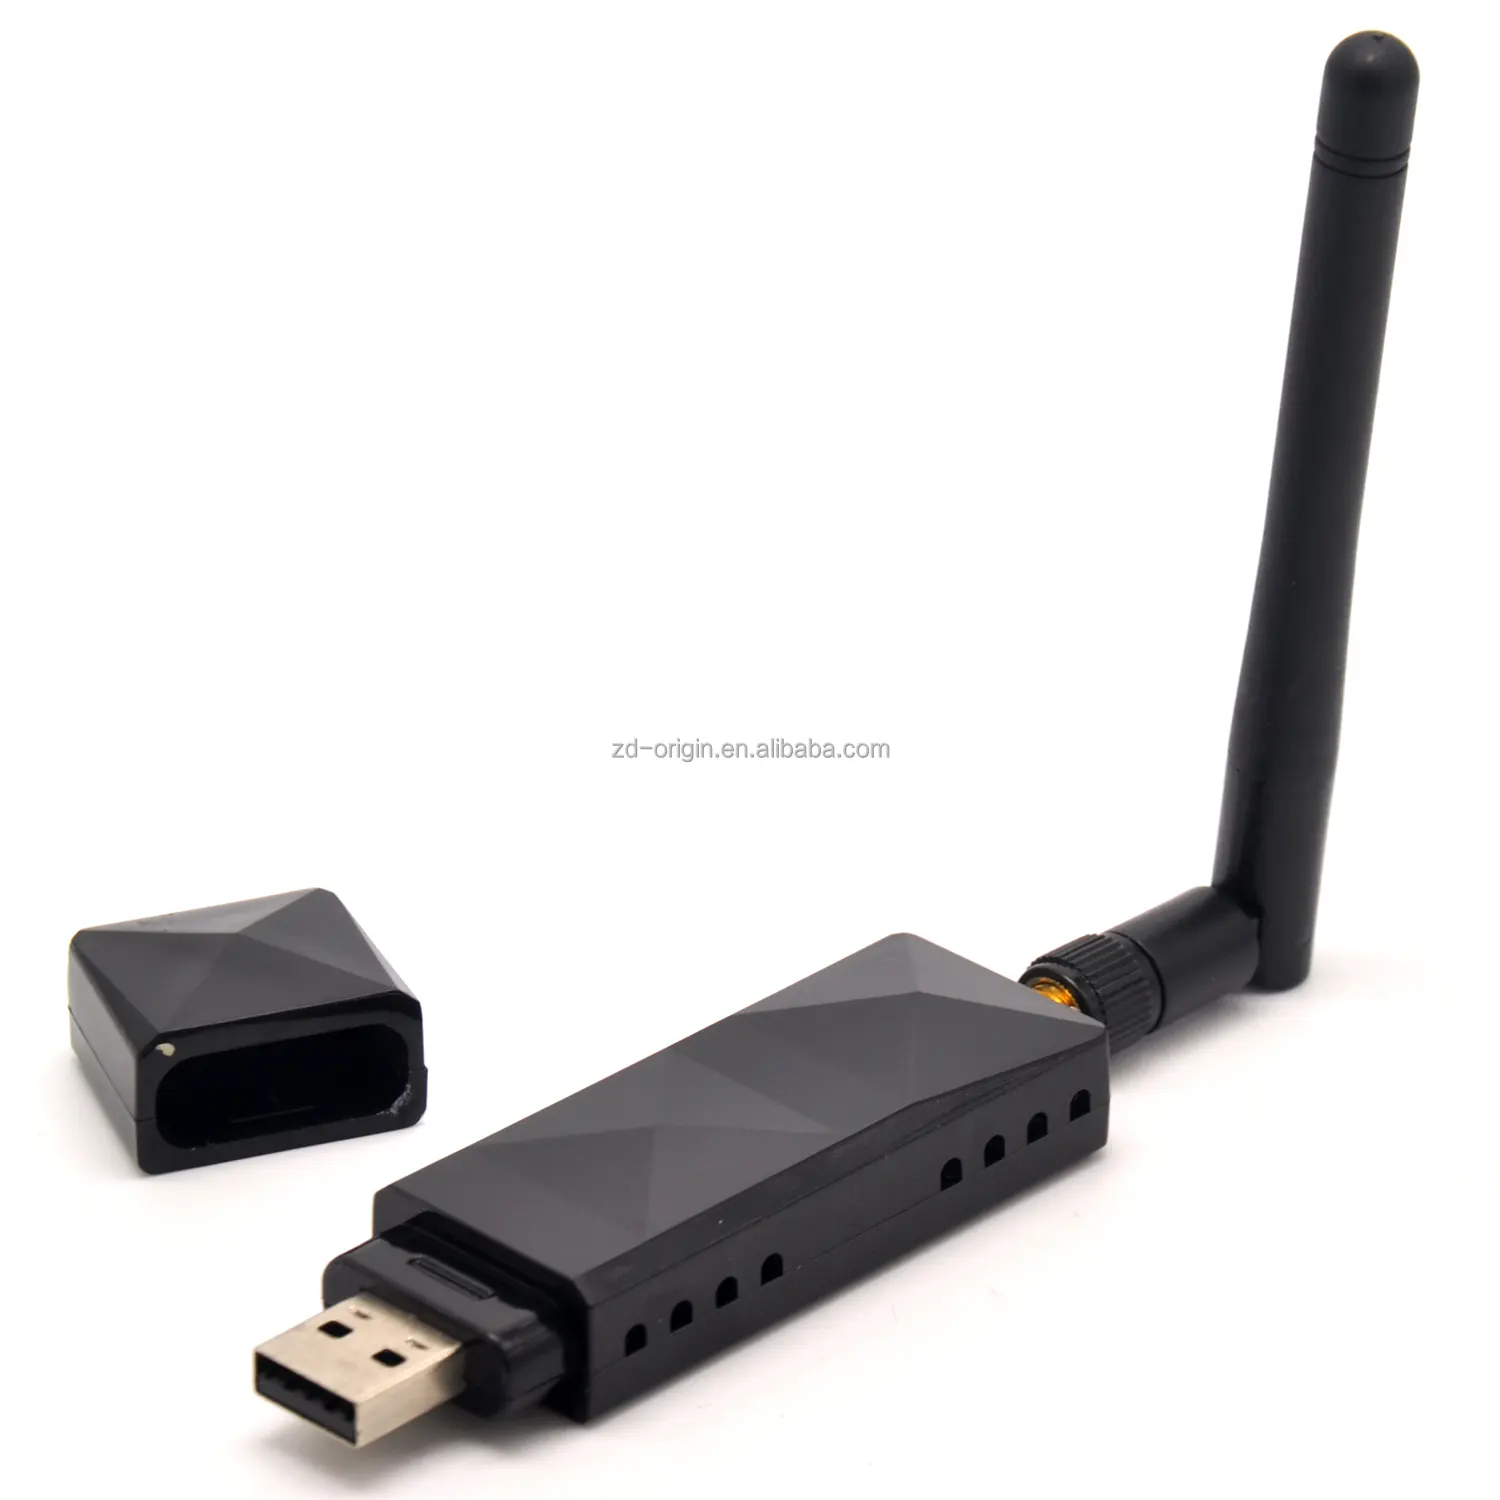 اثيروس AR9271 شرائح 150Mbps محول لاسلكي USB واي فاي 802.11n بطاقة الشبكة مع 2DBI الهوائي للنوافذ/8/10/كالي لينكس